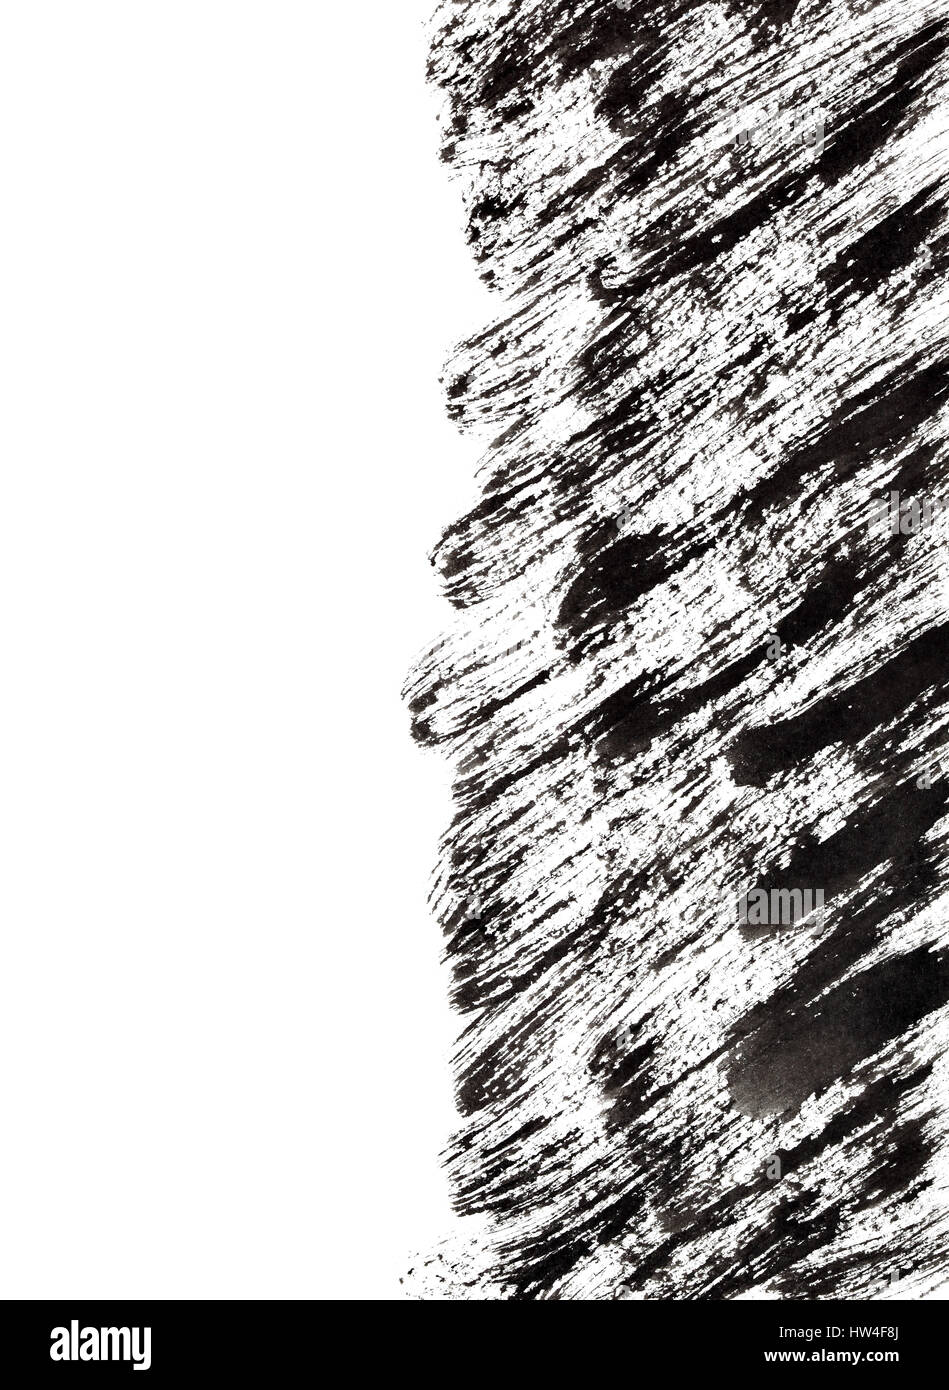 Coups de pinceau grunge noir avec edge. L'élément graphique pour votre conception Banque D'Images